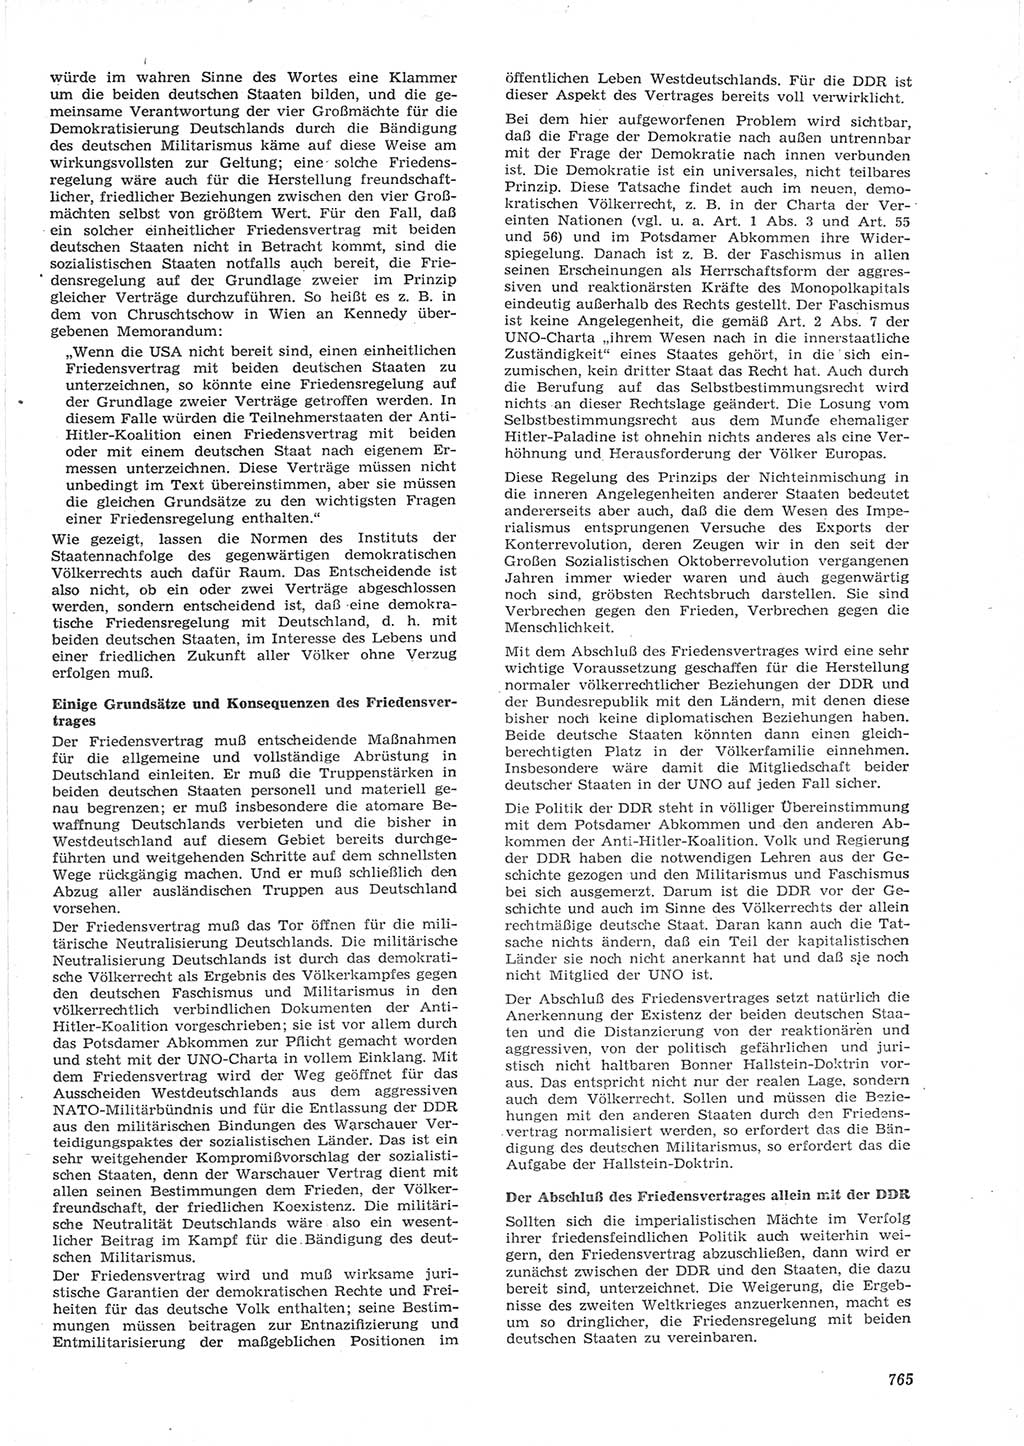 Neue Justiz (NJ), Zeitschrift für Recht und Rechtswissenschaft [Deutsche Demokratische Republik (DDR)], 15. Jahrgang 1961, Seite 765 (NJ DDR 1961, S. 765)